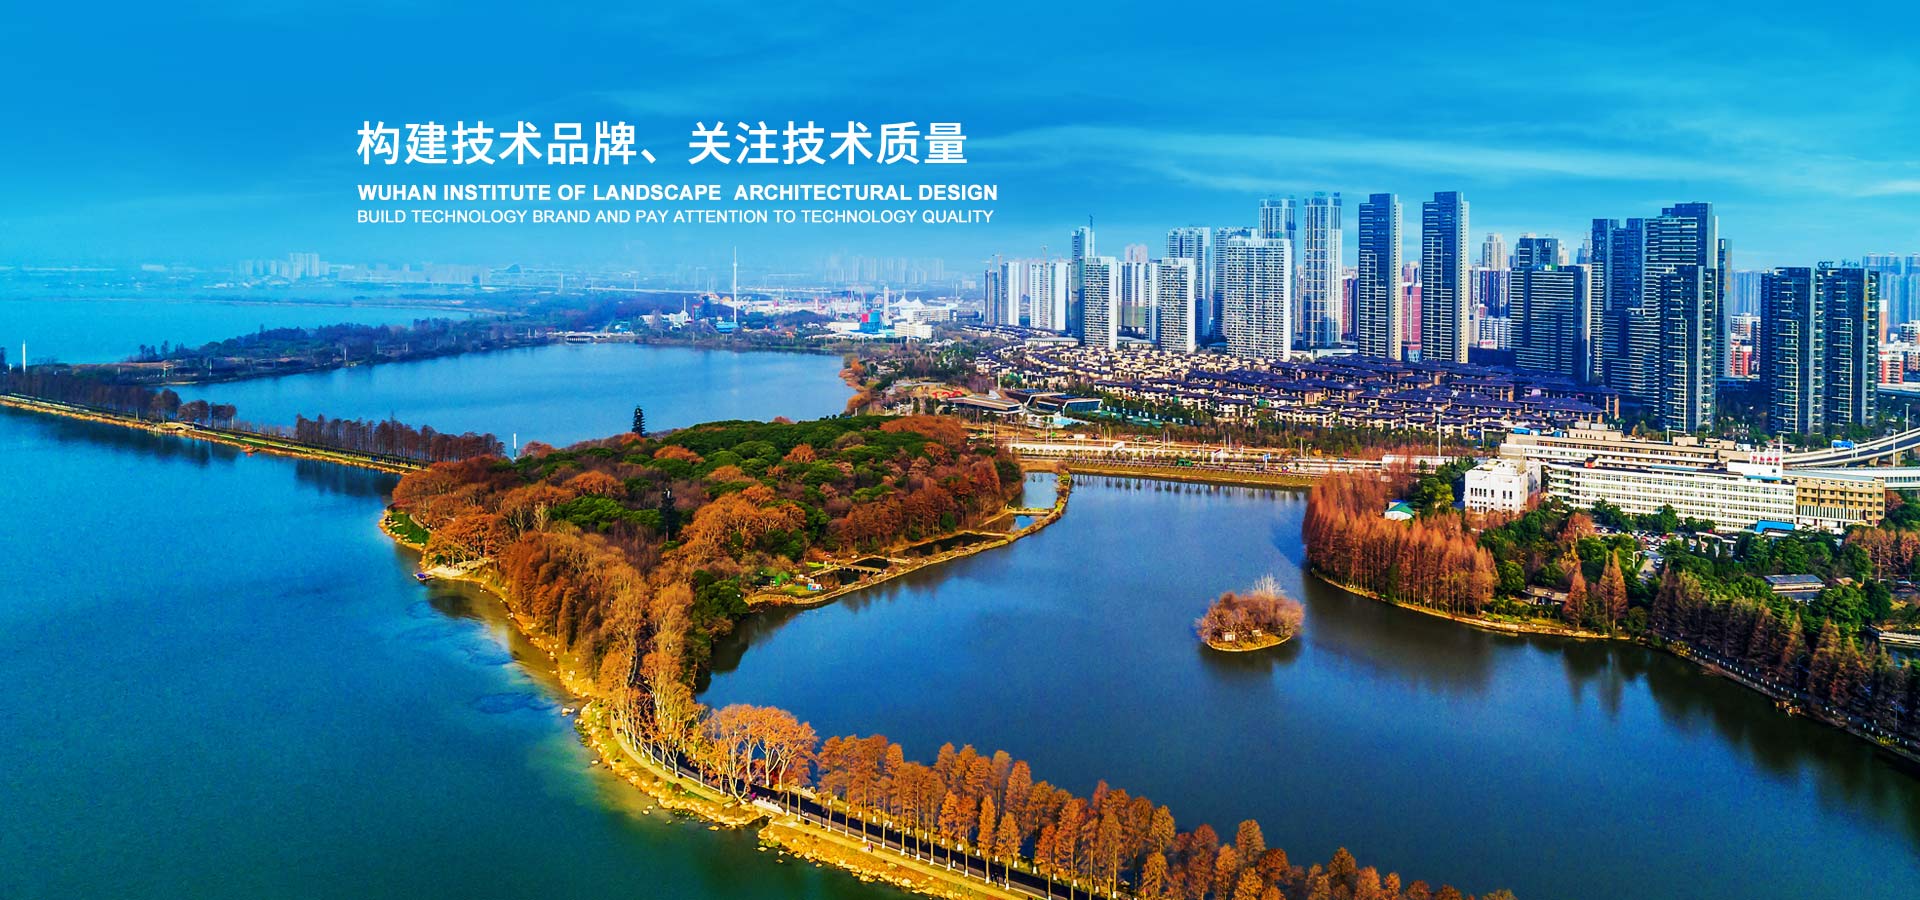 武汉市园林建筑规划设计研究院有限公司 